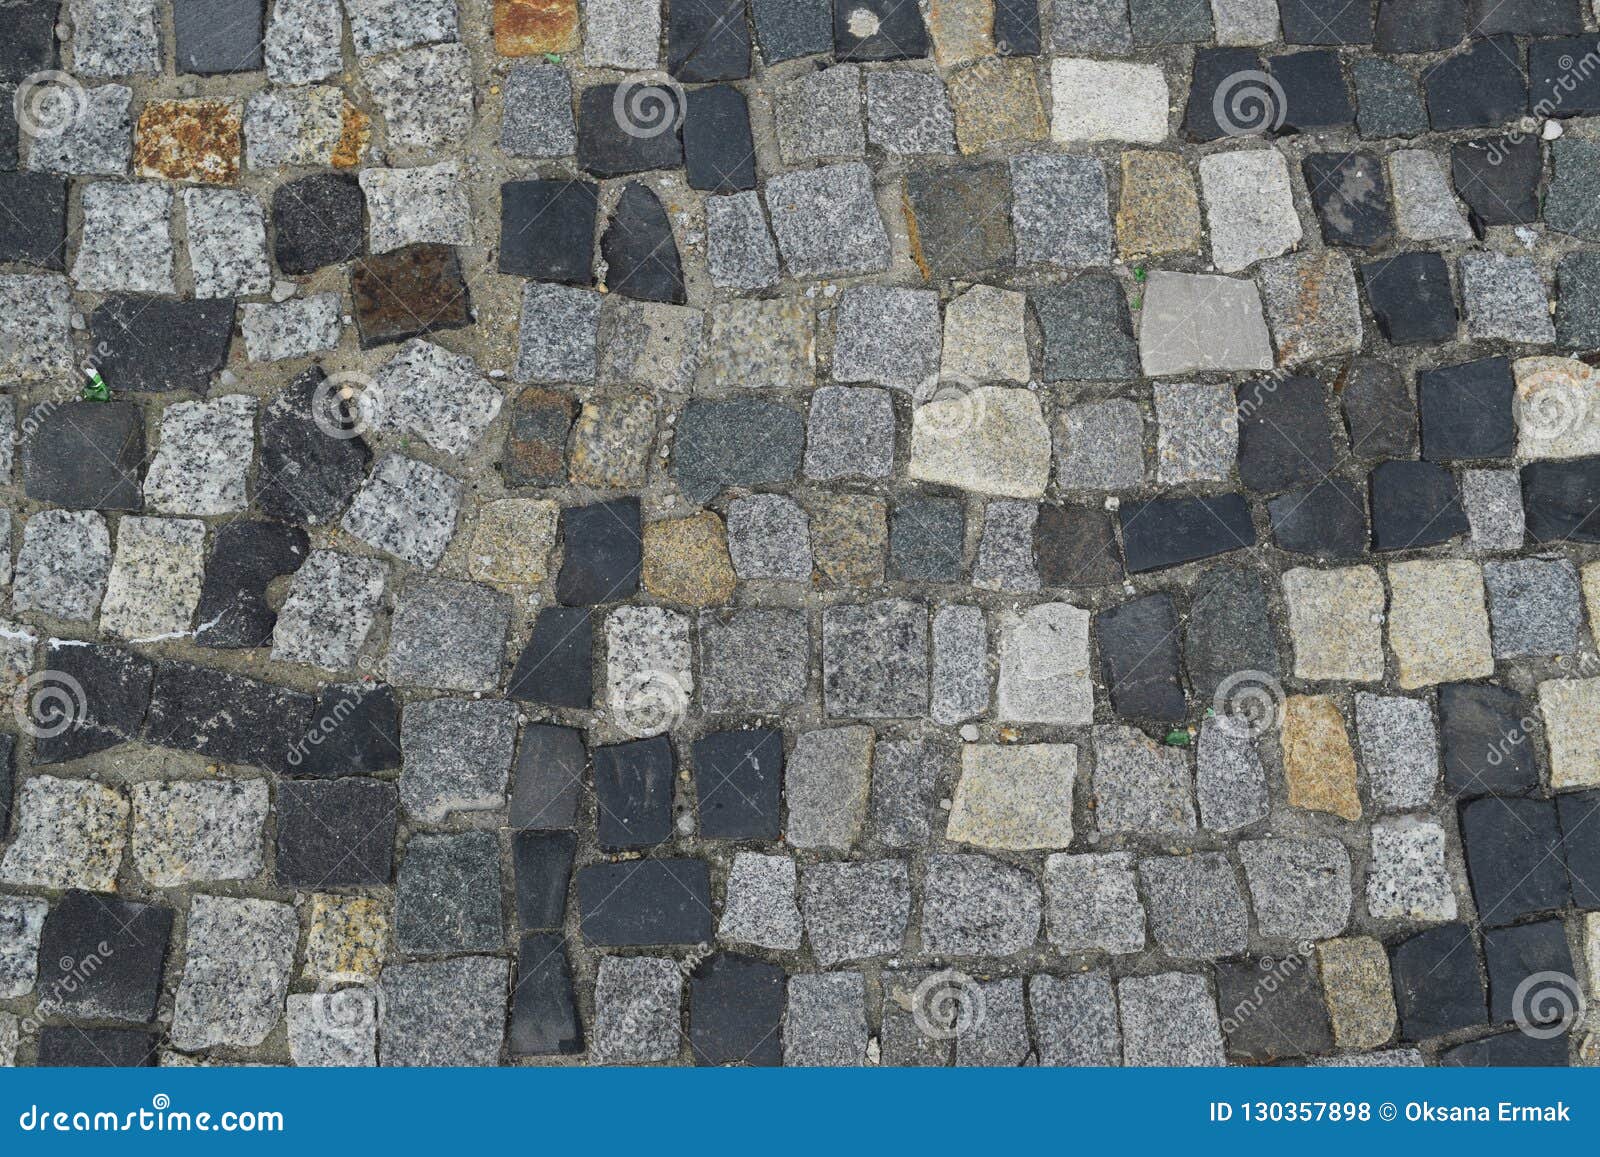 portuguese stone pavement or calcada portuguesa road